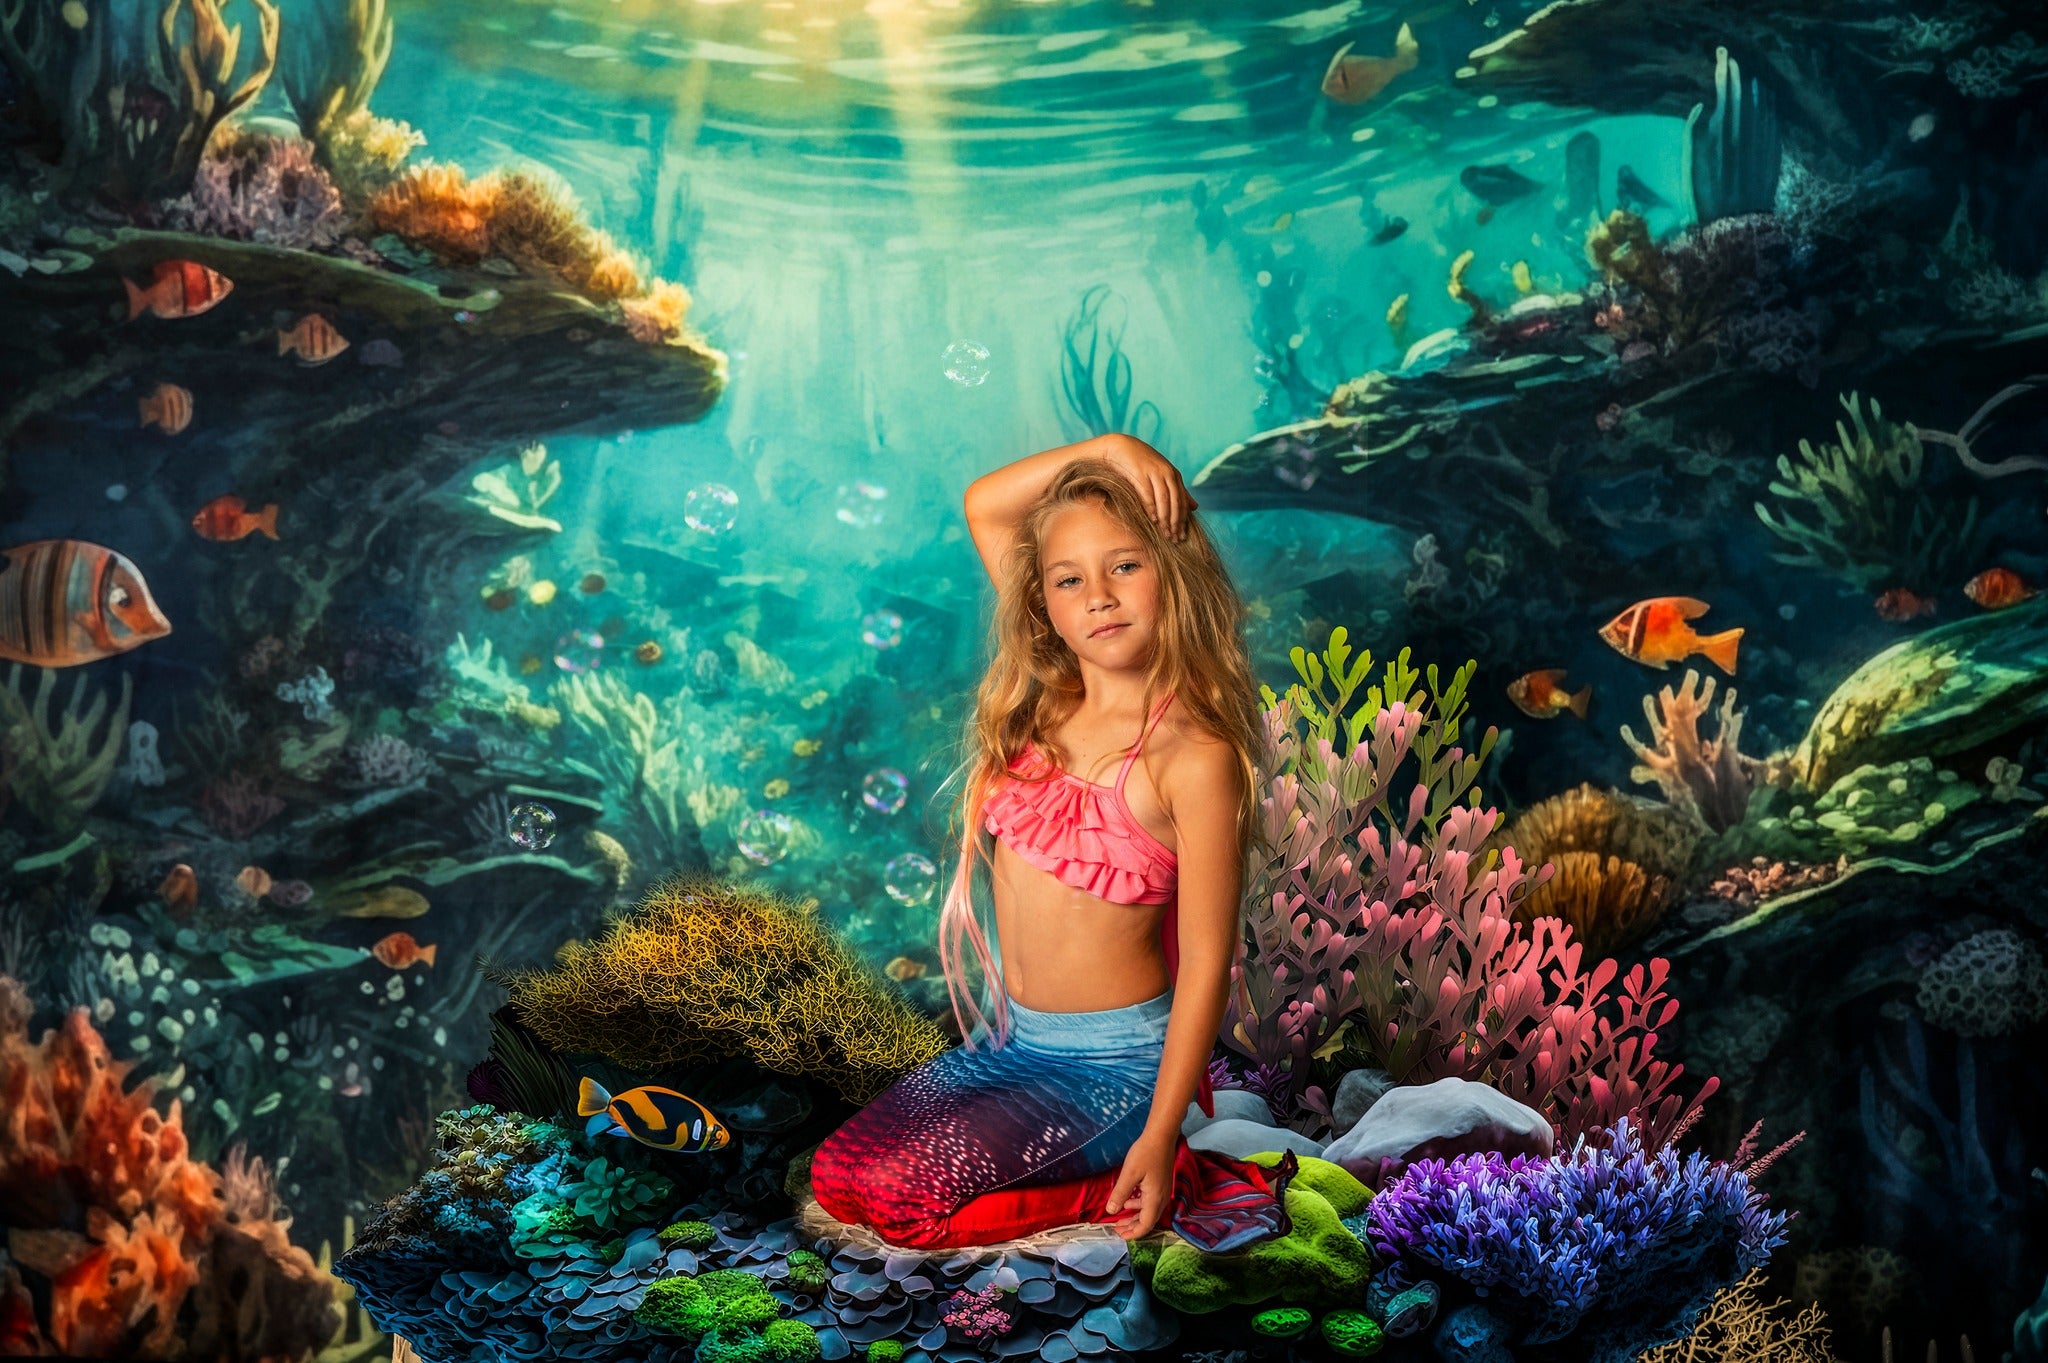 Kate Sommer Unterwasser Ozean Riff Hintergrund von Mandy Ringe Fotograf